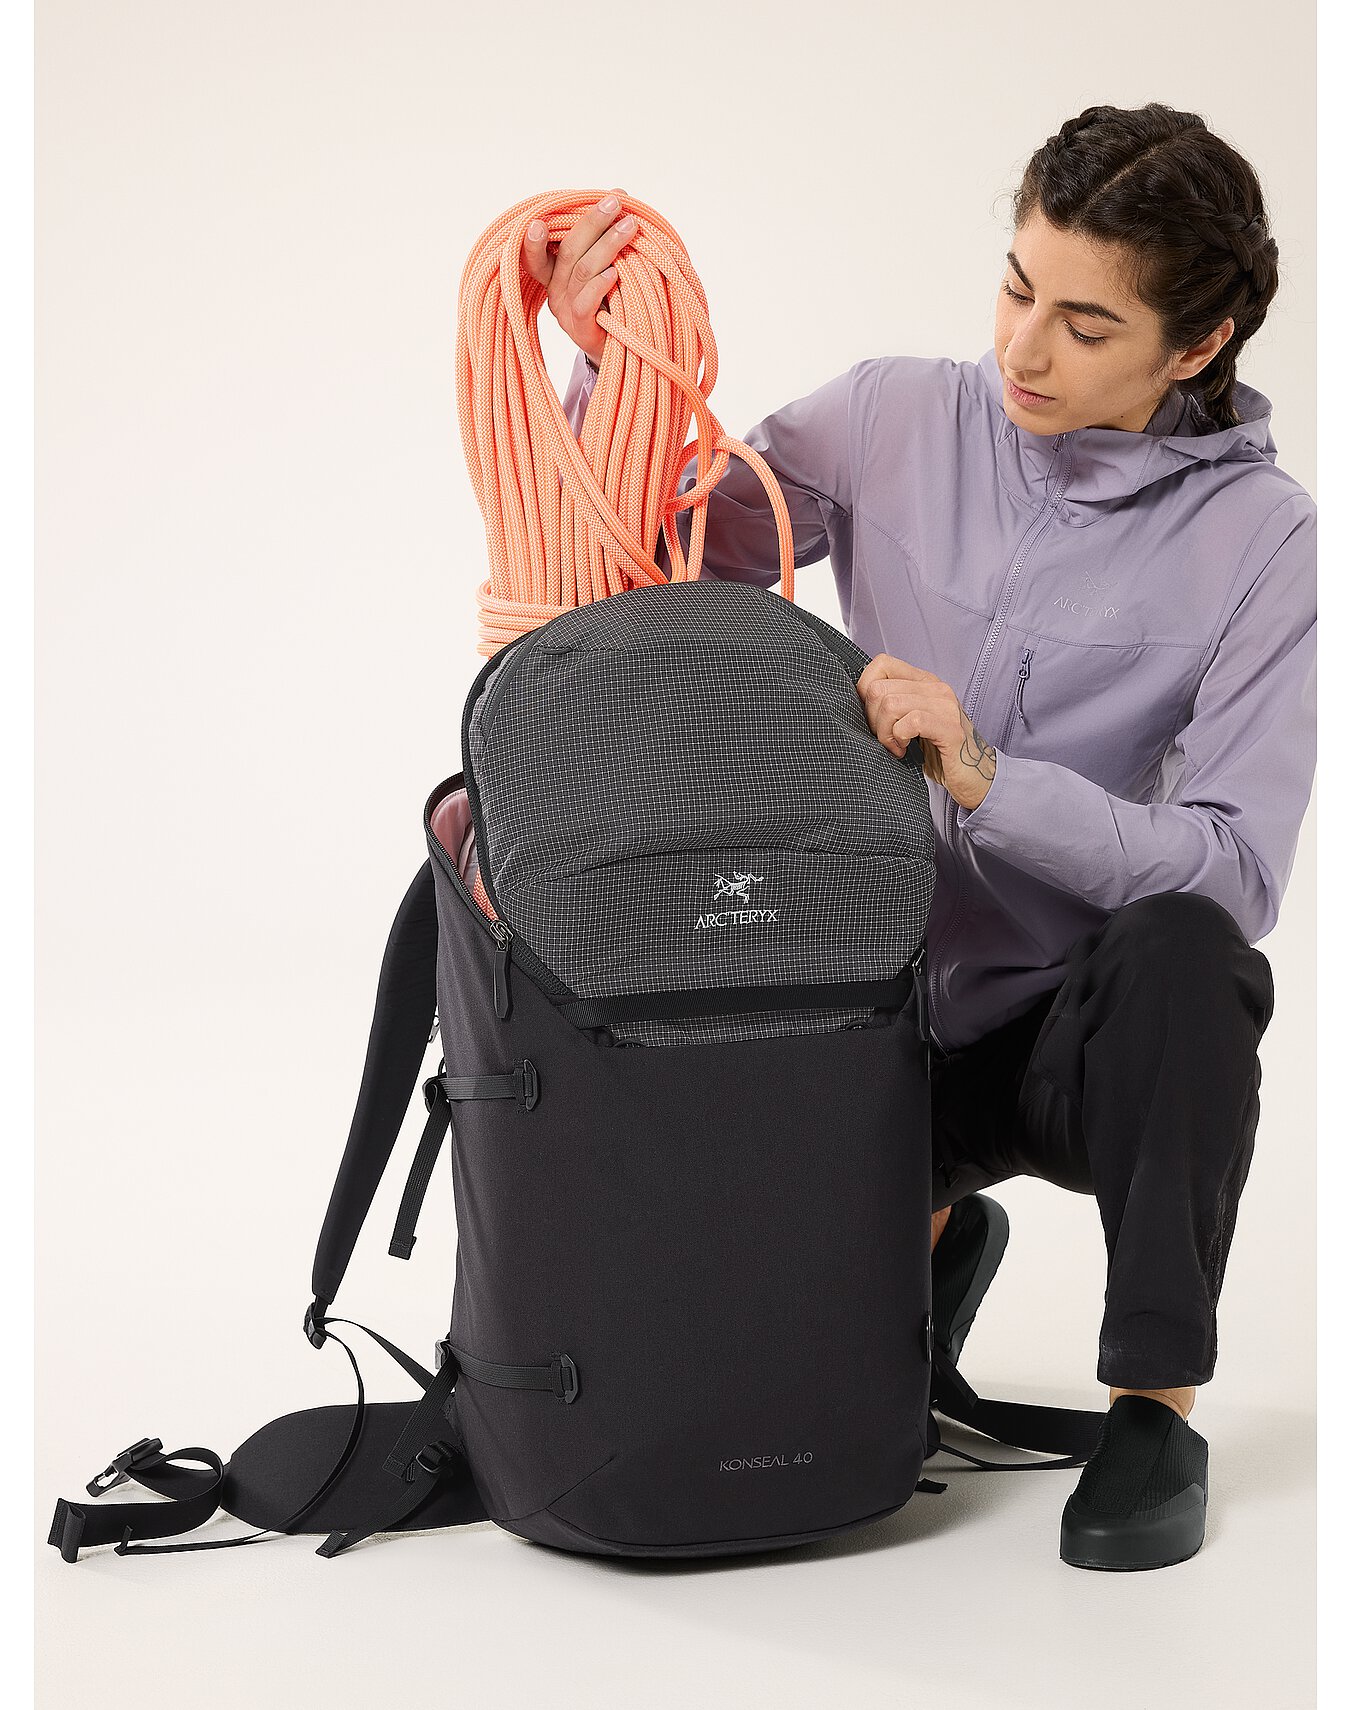 Konseal 40 Backpack | Arc'teryx